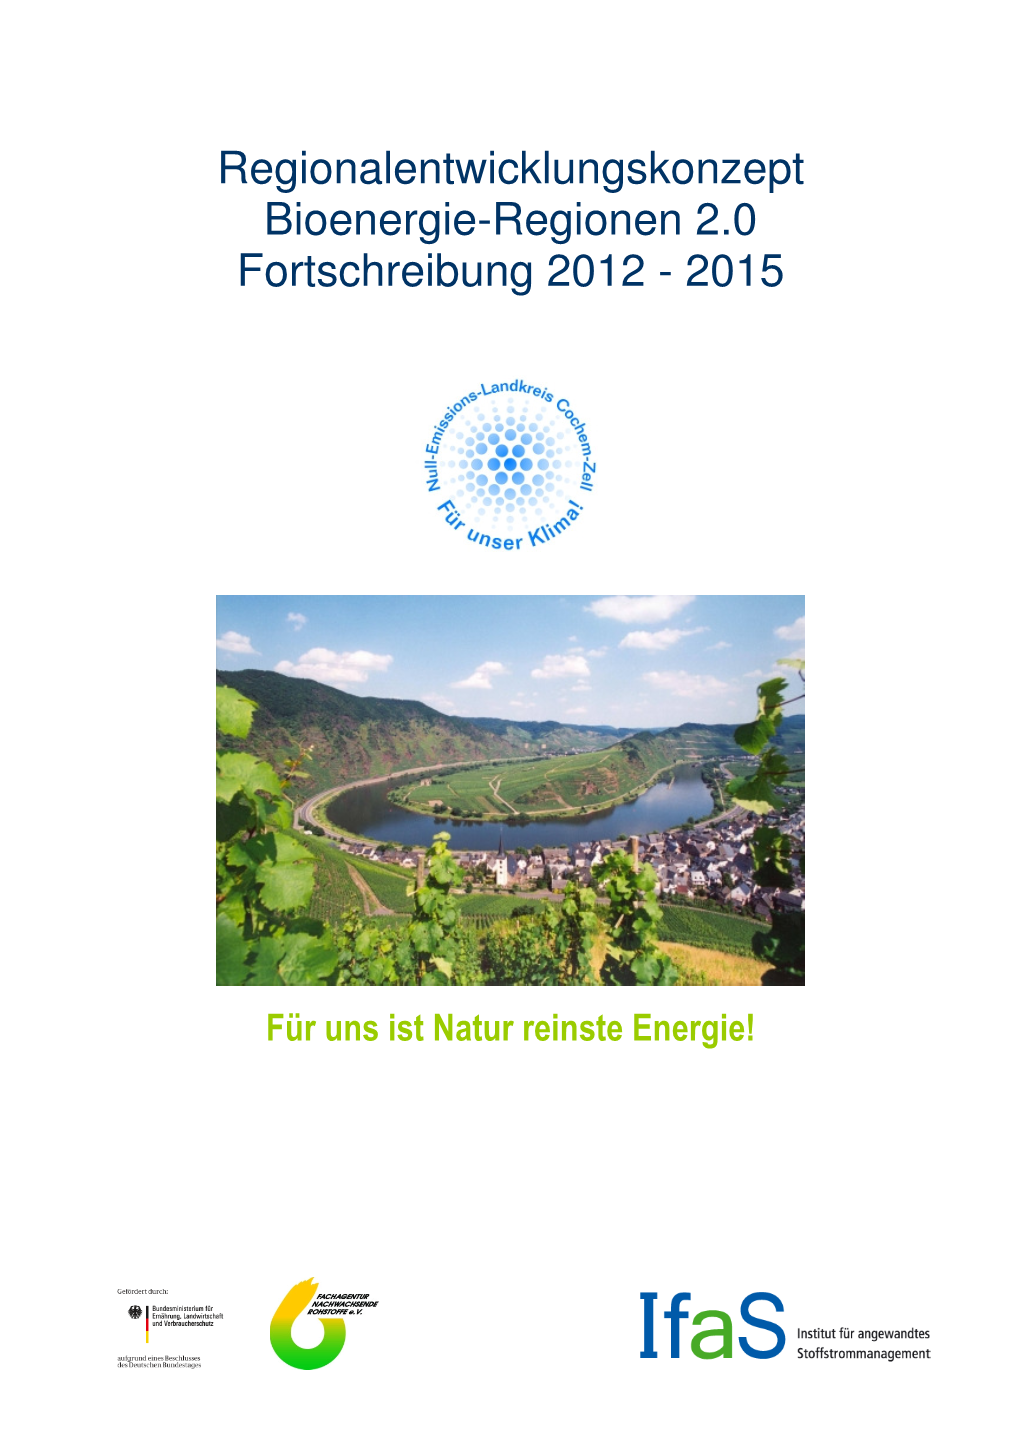 Regionalentwicklungskonzept Bioenergie-Regionen 2.0 Fortschreibung 2012 - 2015